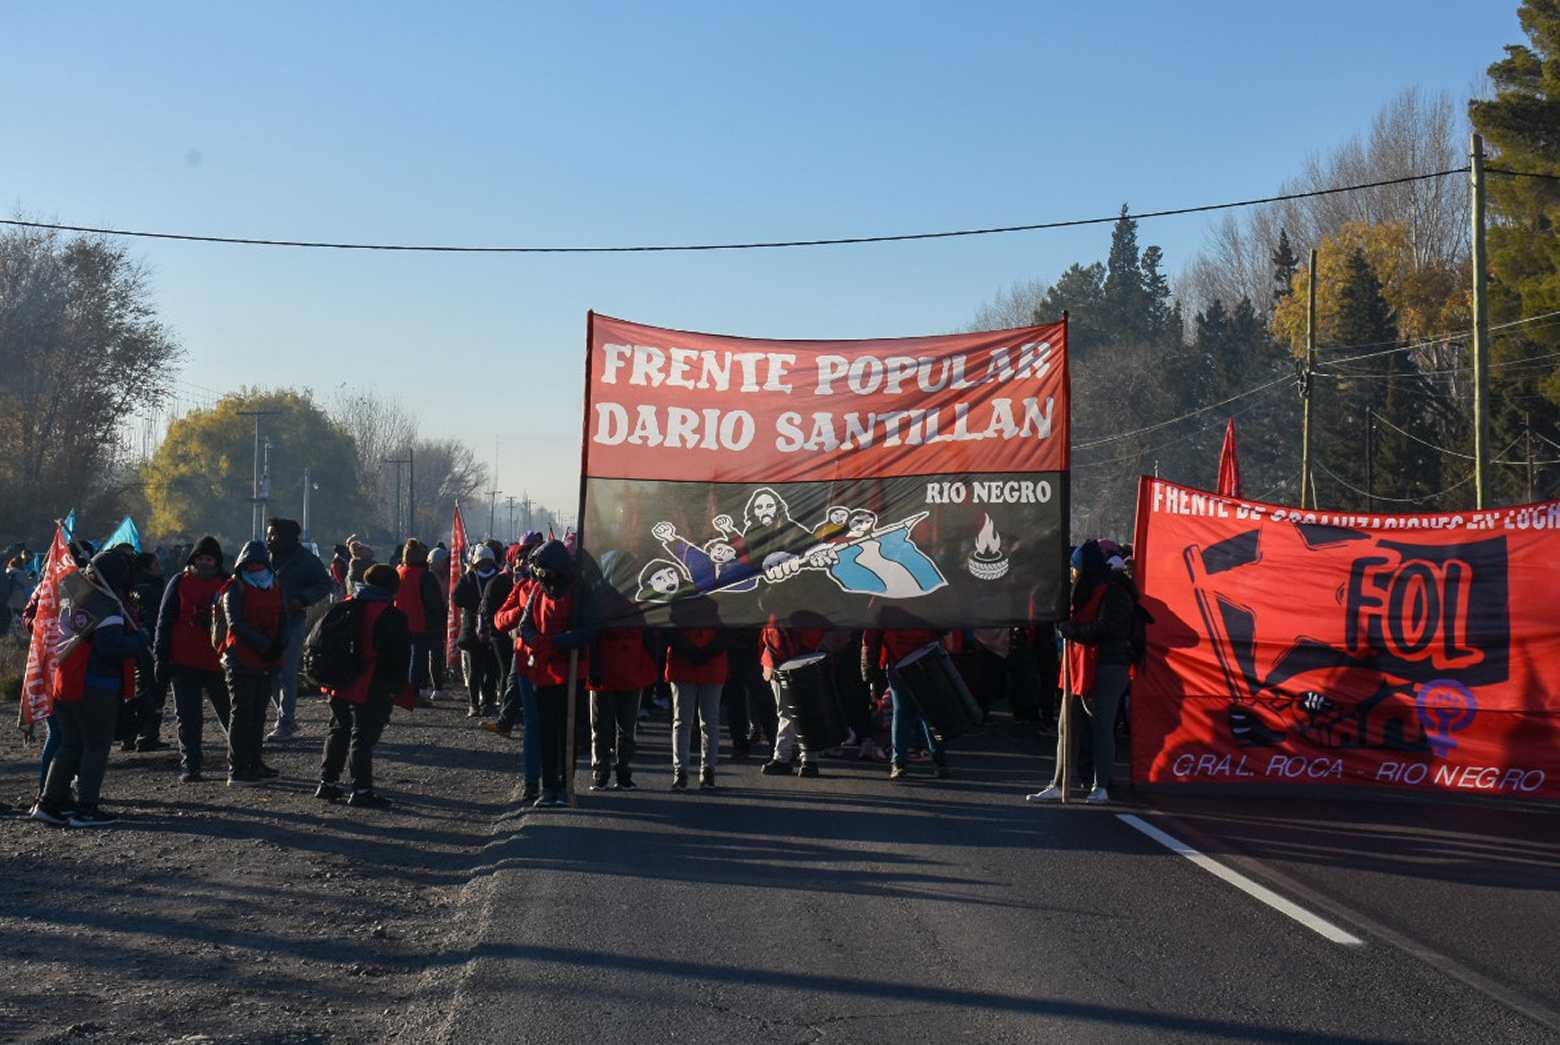 El Frente Piquetero cortó rutas a fines de mayo y principios de junio. Ahora se manifestarán frente a sedes del gobierno rionegrino. (Foto: Juan Thomes)